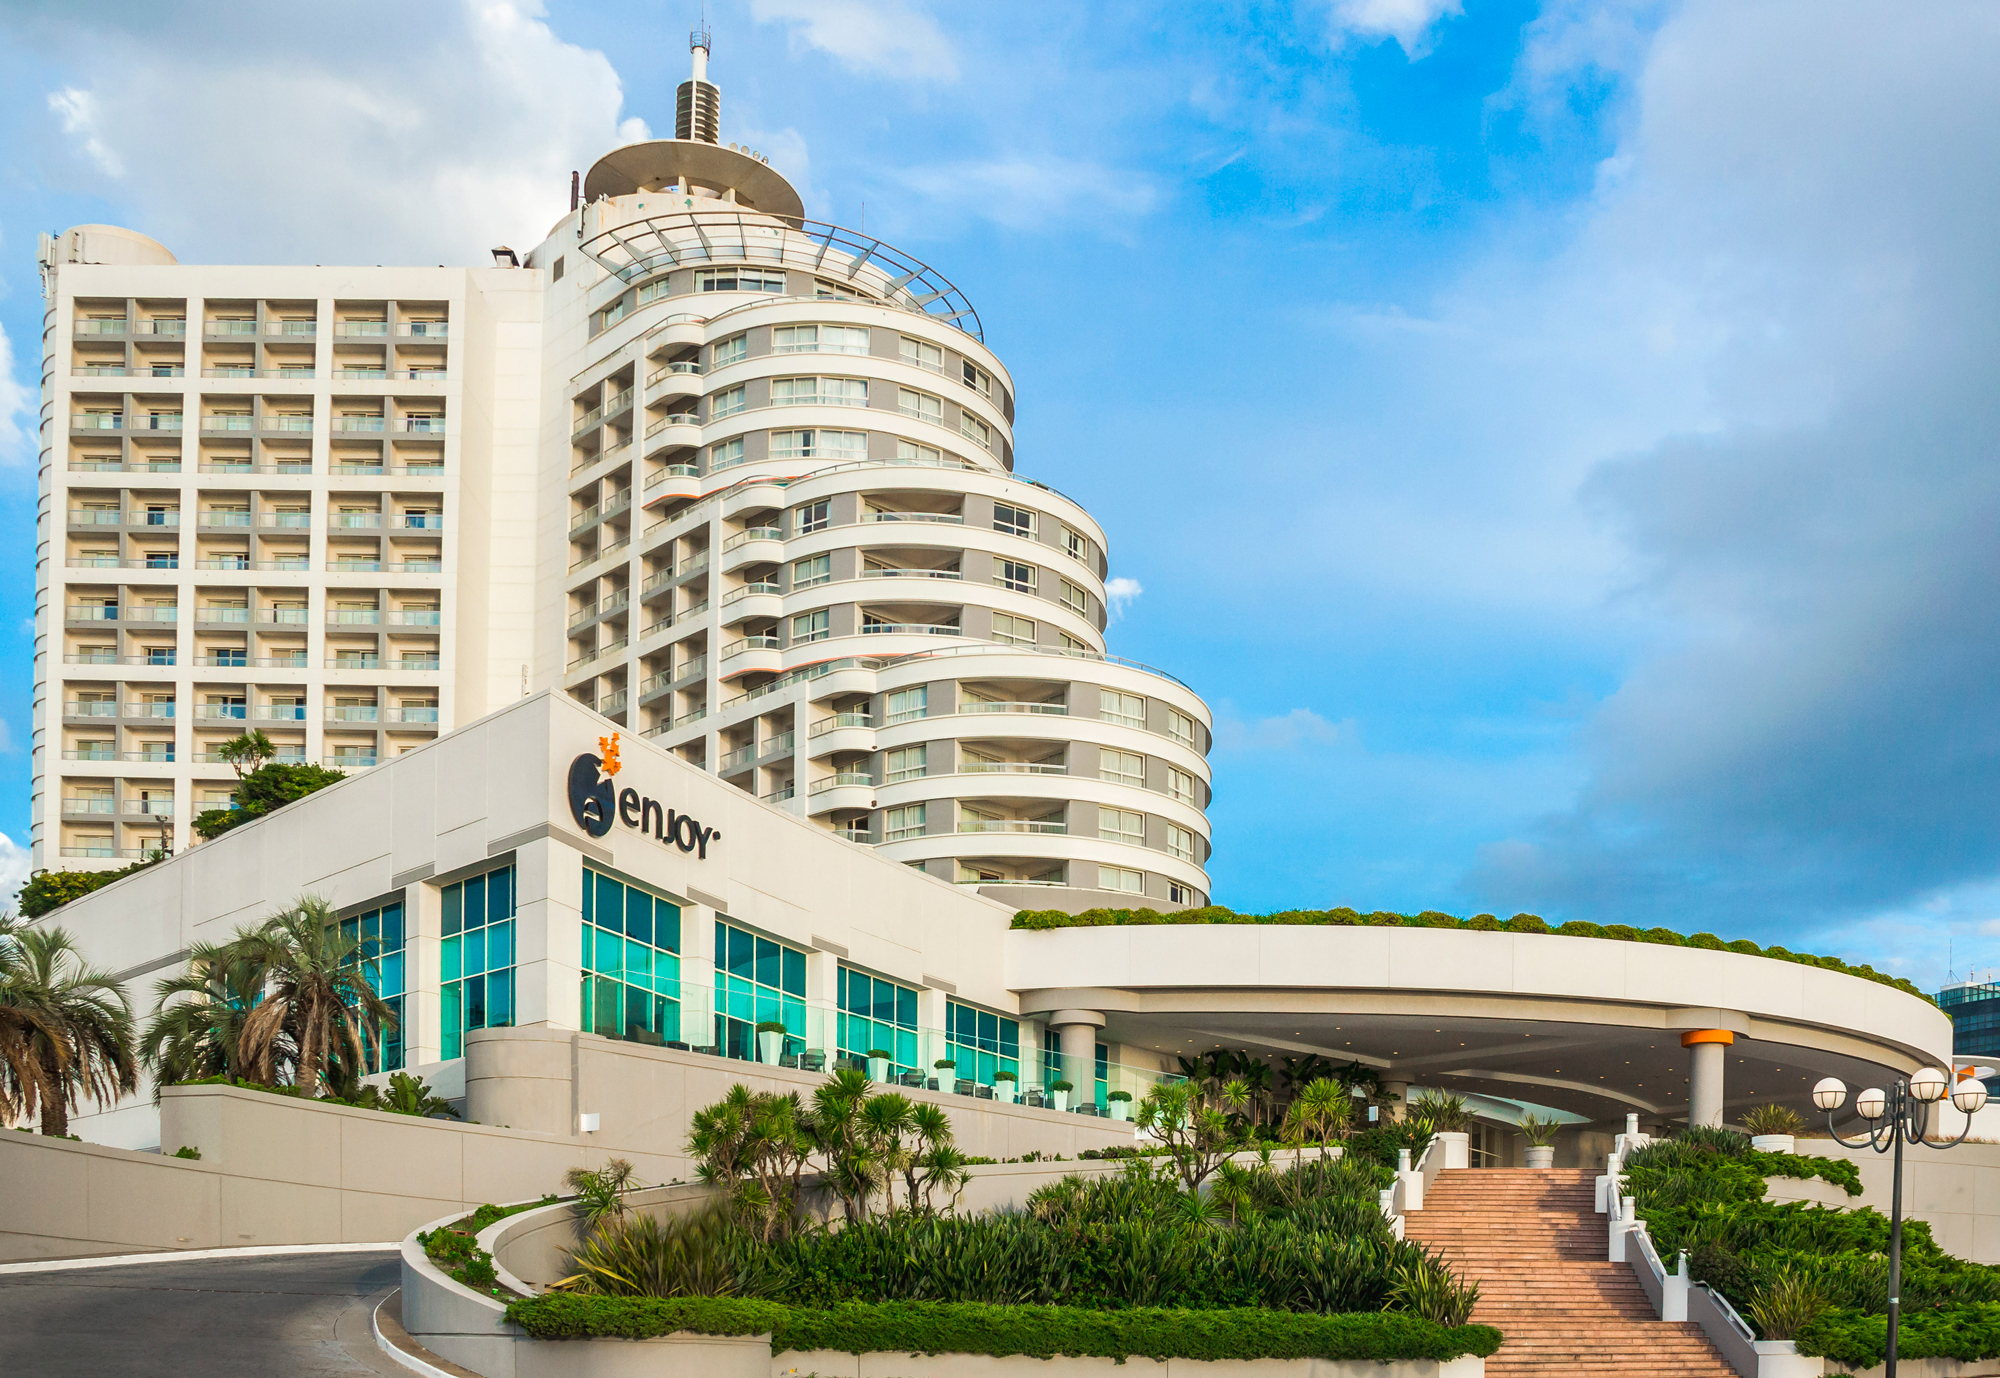 Enjoy Punta del Este fue premiado como el mejor Casino & Resort de América del Sur